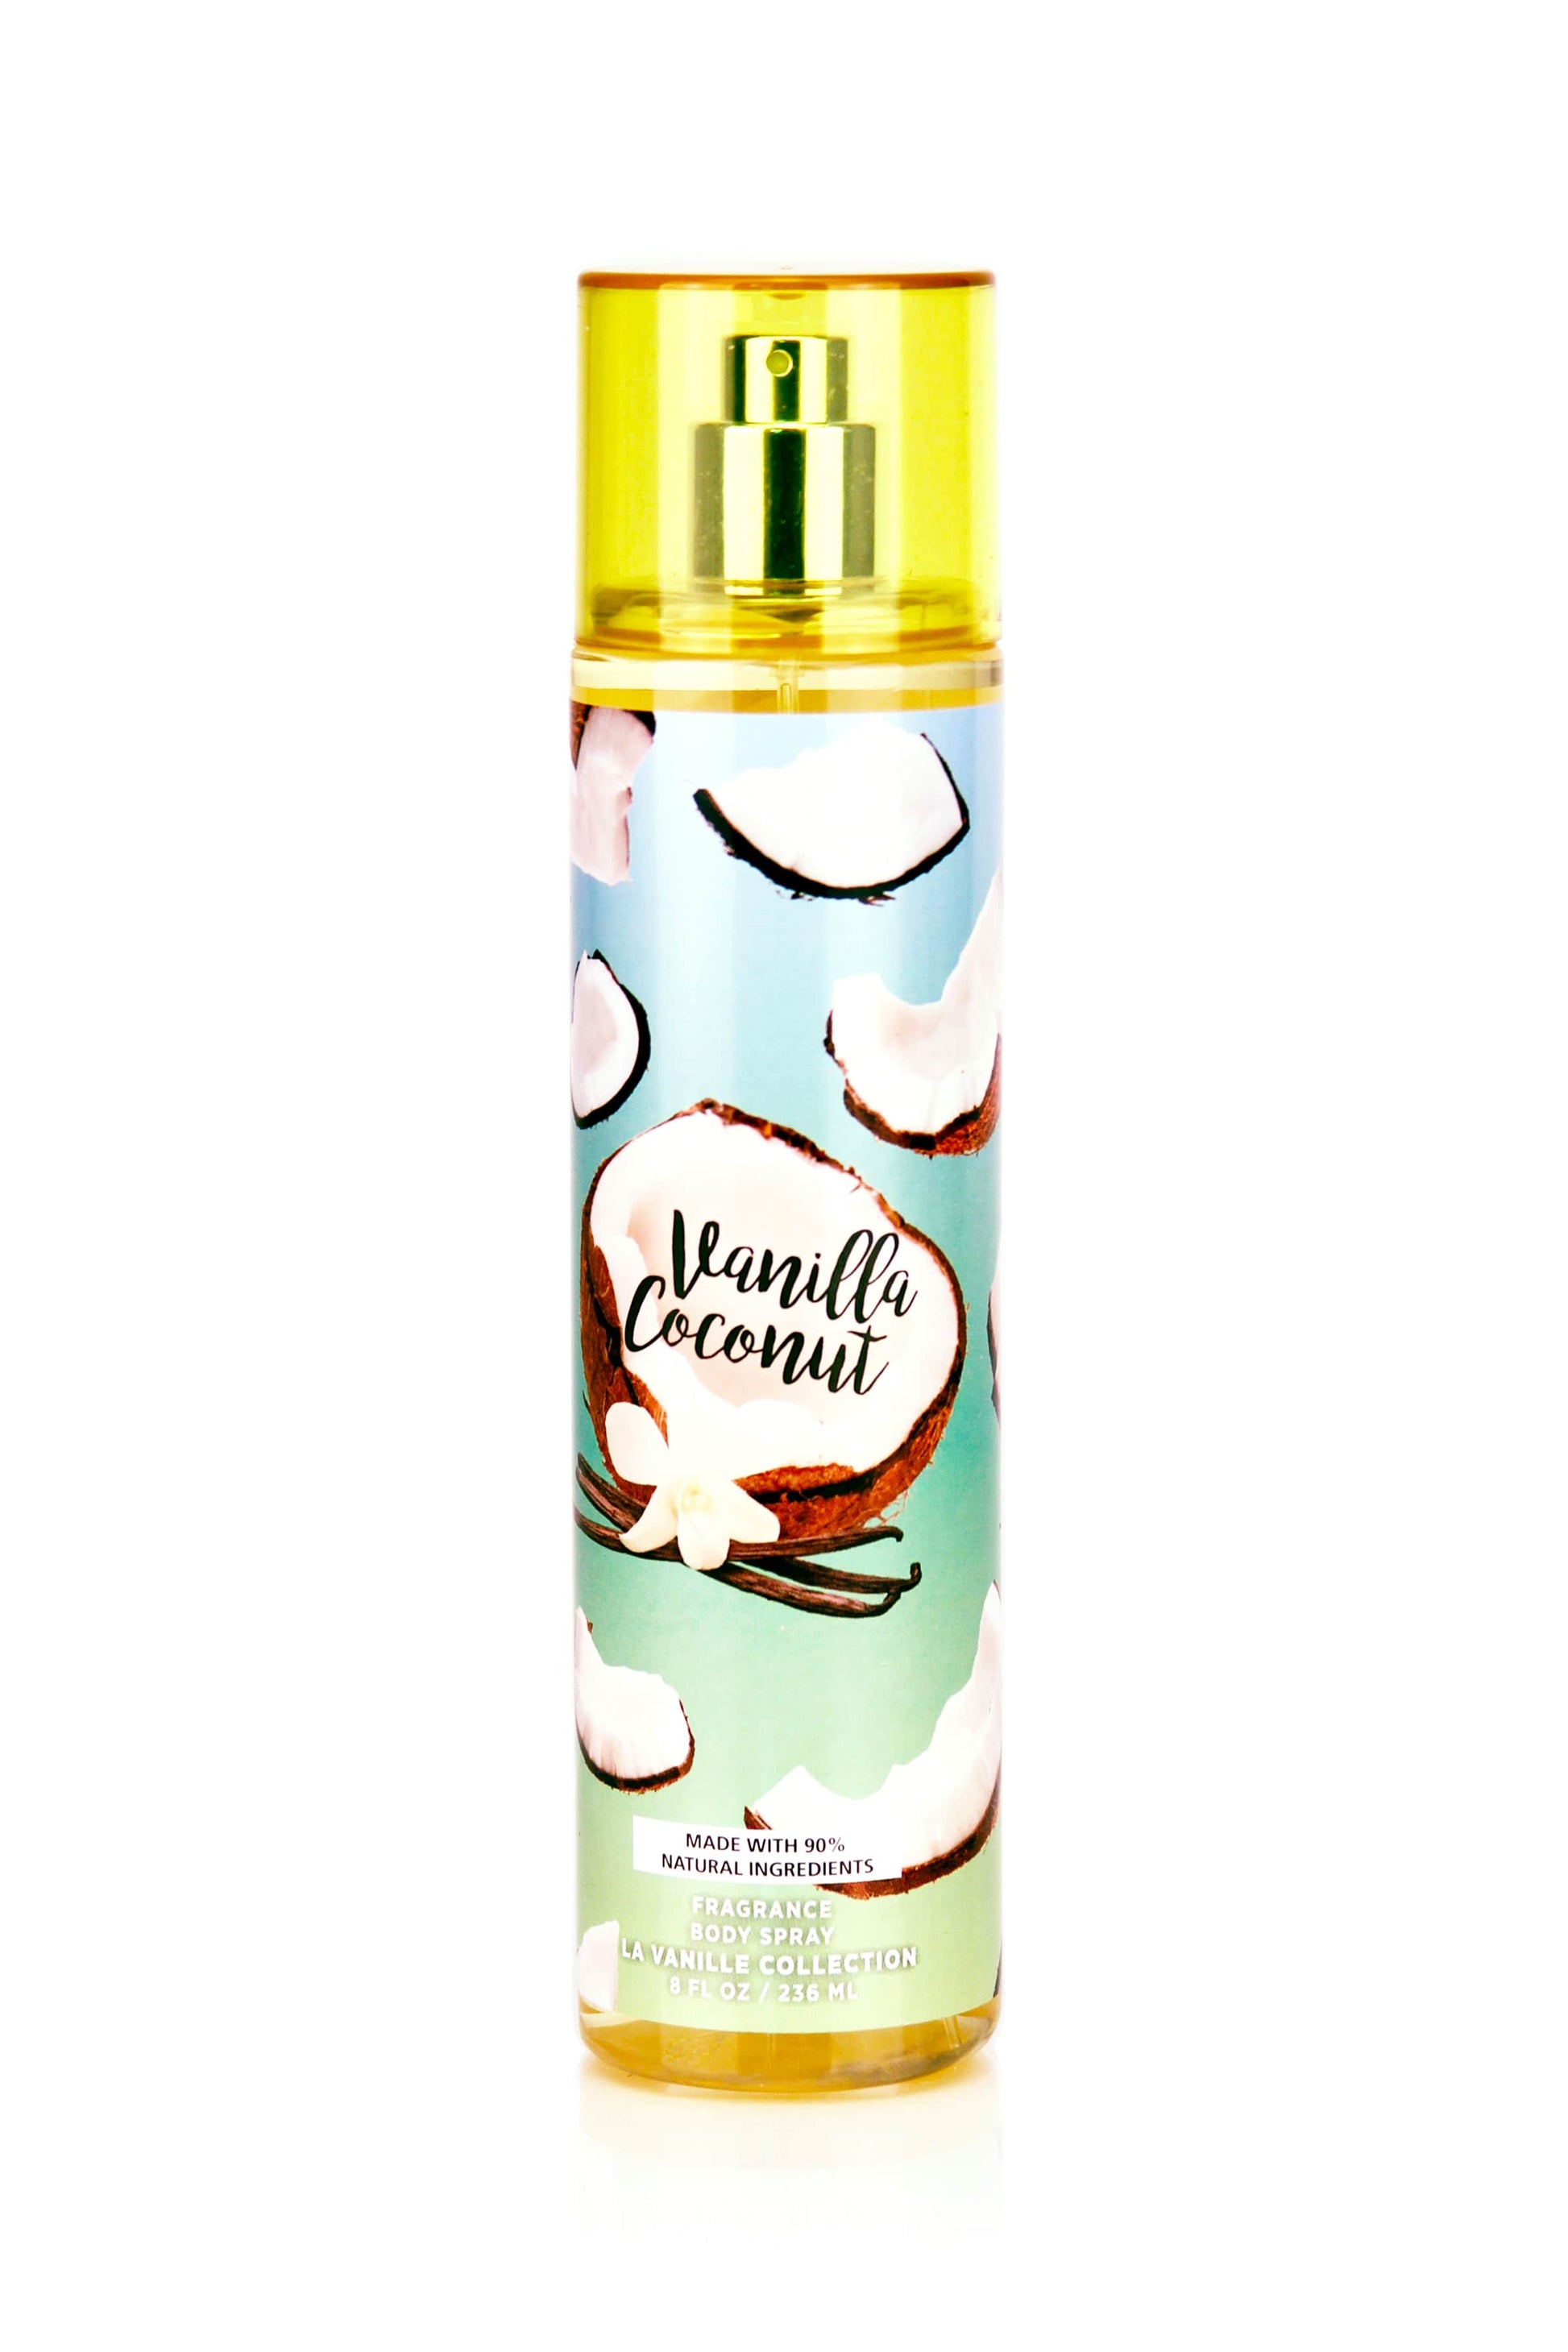  1oz. French Vanilla Spray Perfume/Skin Body Fragrance